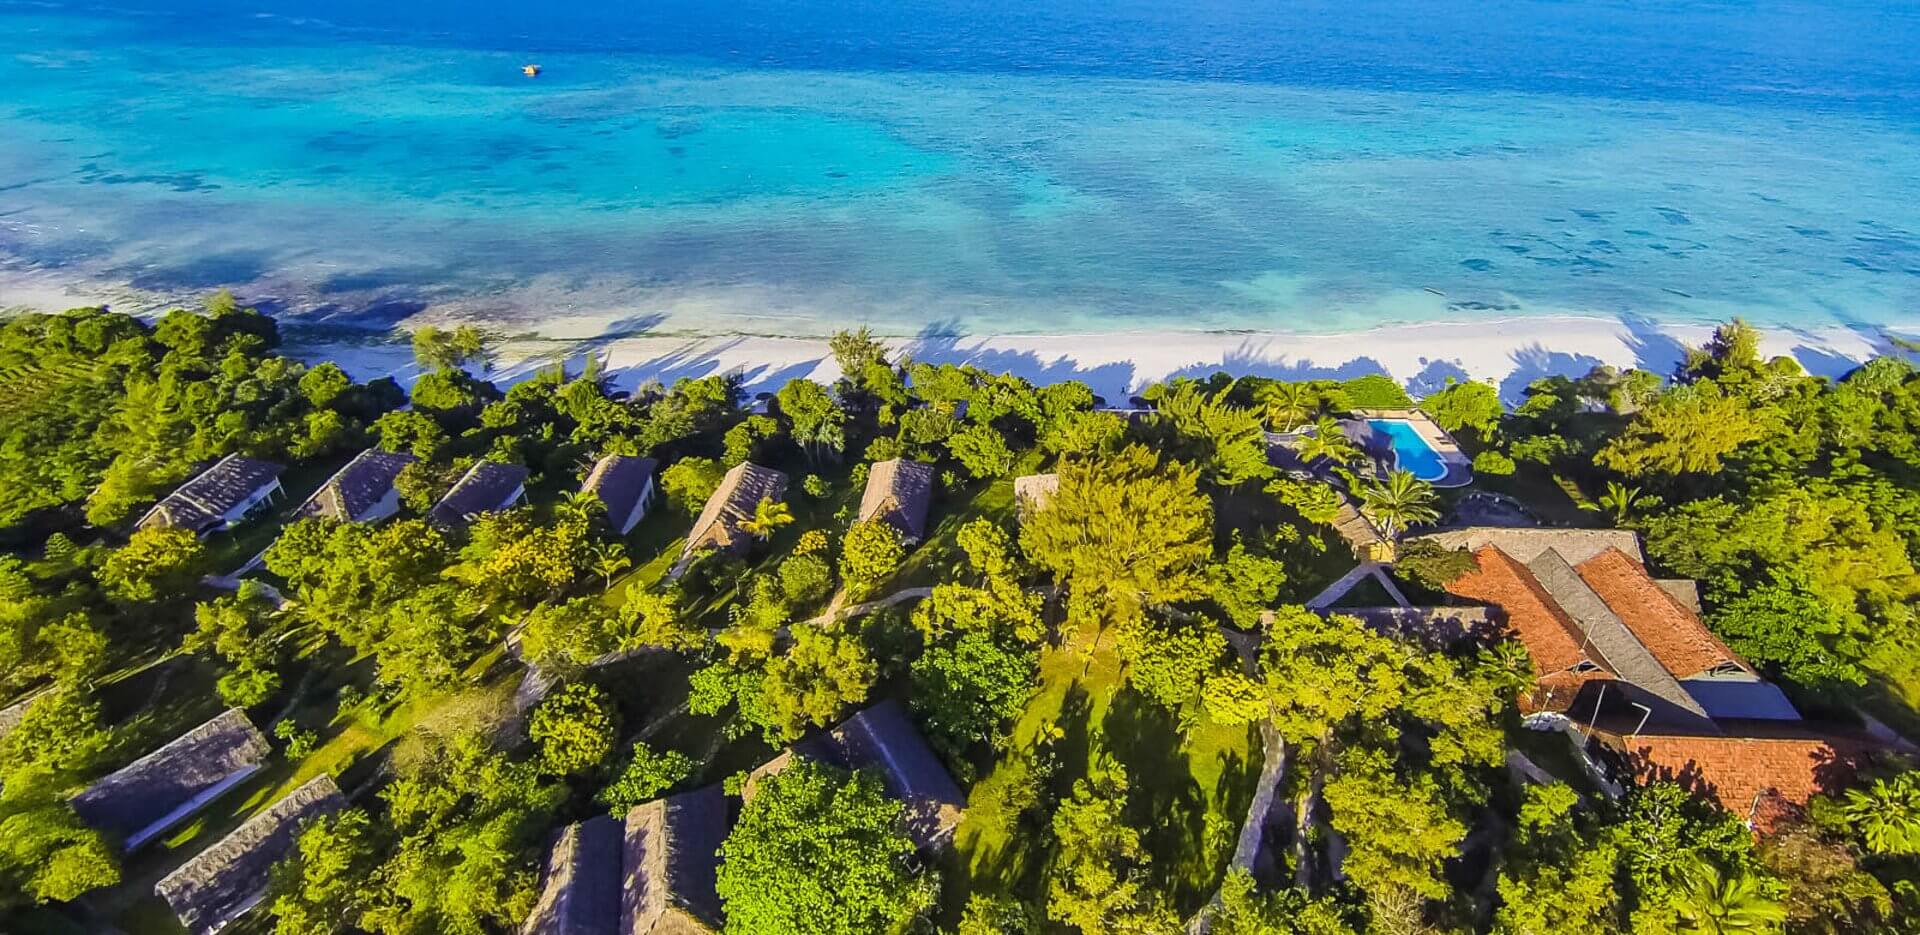 The Manta Resort Tanzania